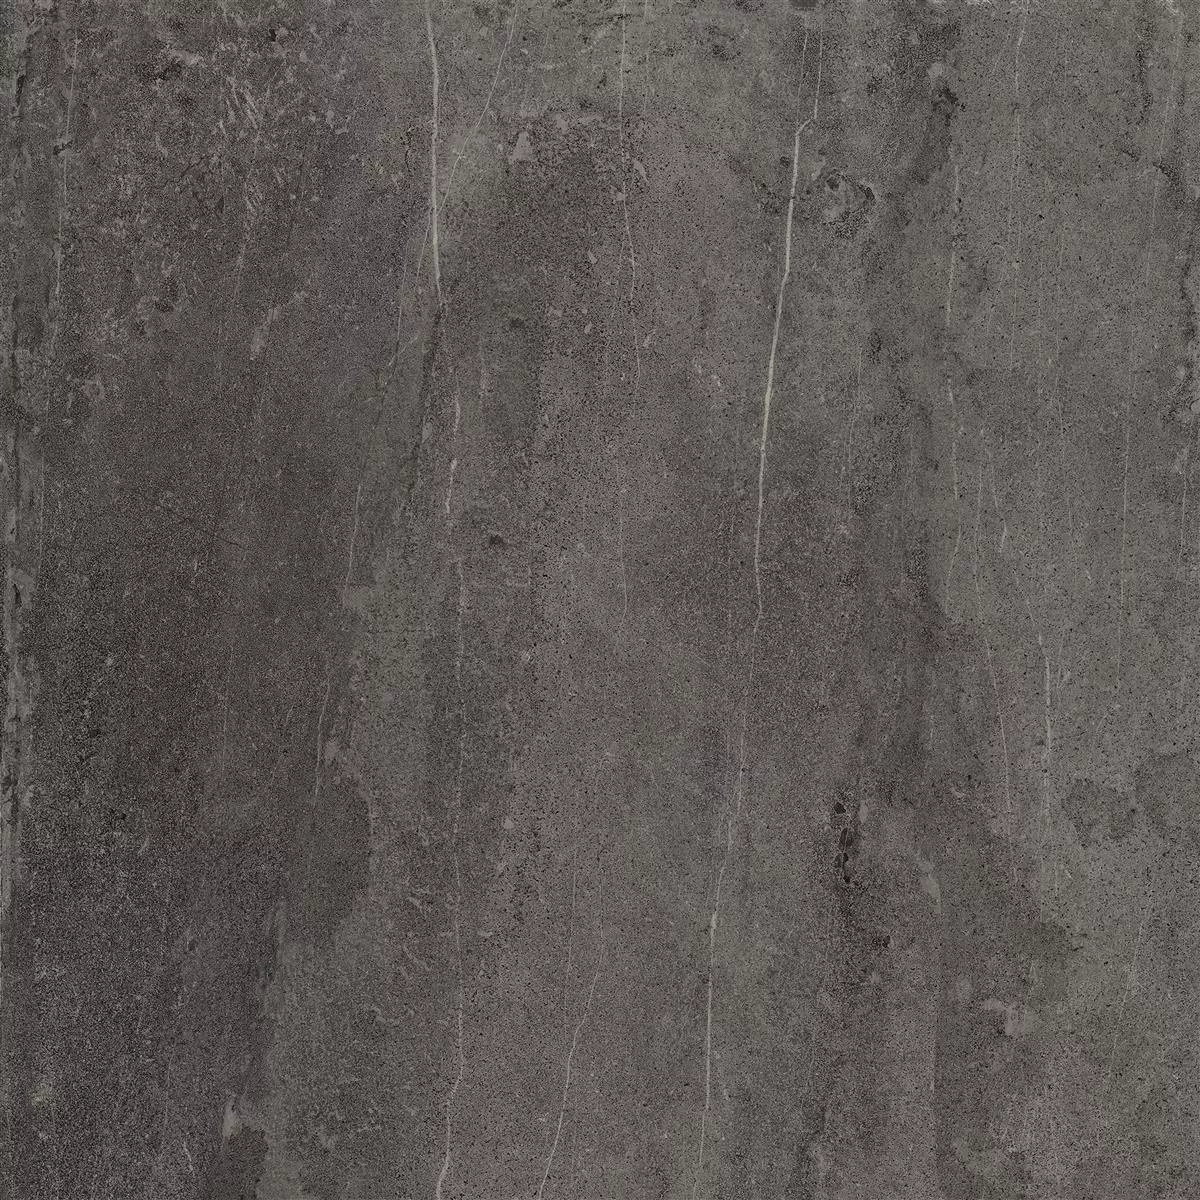 Πρότυπο Πλακάκια Δαπέδου Detmold Eμφάνιση Φυσικής Πέτρας 60x60cm Ανθρακίτης